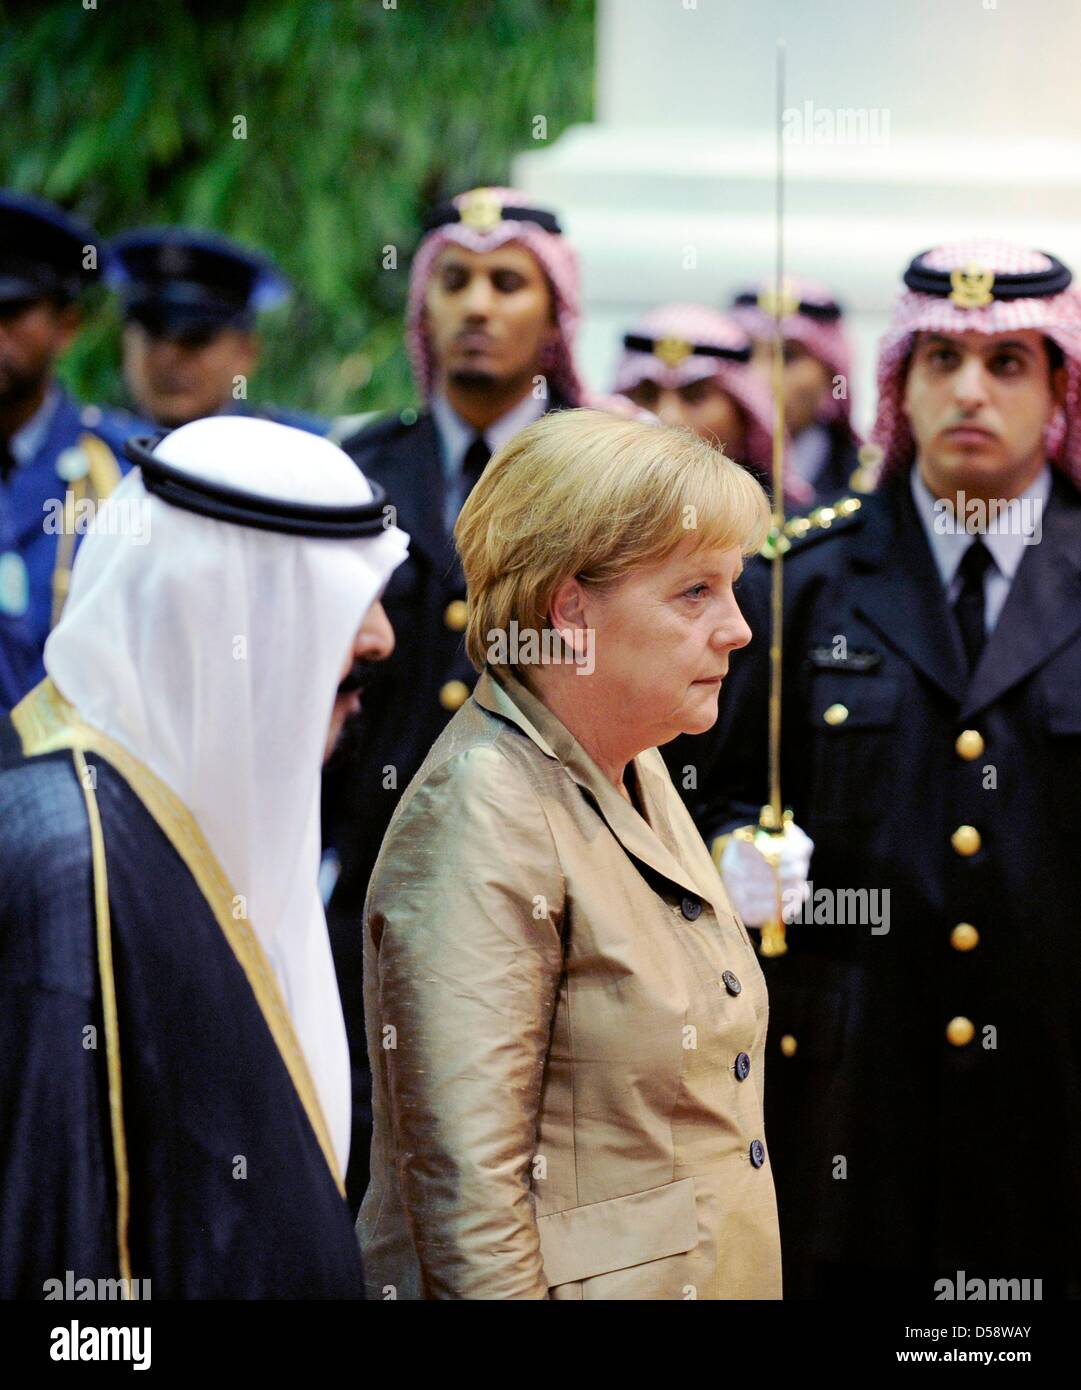 Bundeskanzlerin Angela Merkel (CDU) wird am Dienstag (25.05.2010) vor dem Palast des Königs in Djidda (Saudi-Arabien) vom König Abdullah (l) mit militärischen Ehren empfangen. Bis Donnerstag (27.05.2010) besucht sie vier der sechs Staaten des Golfkooperationsrats (GCC). Ziel des Besuches dieser ölexportierenden Länder ist die Förderung der Wirtschaftsbeziehungen und der politische  Stock Photo